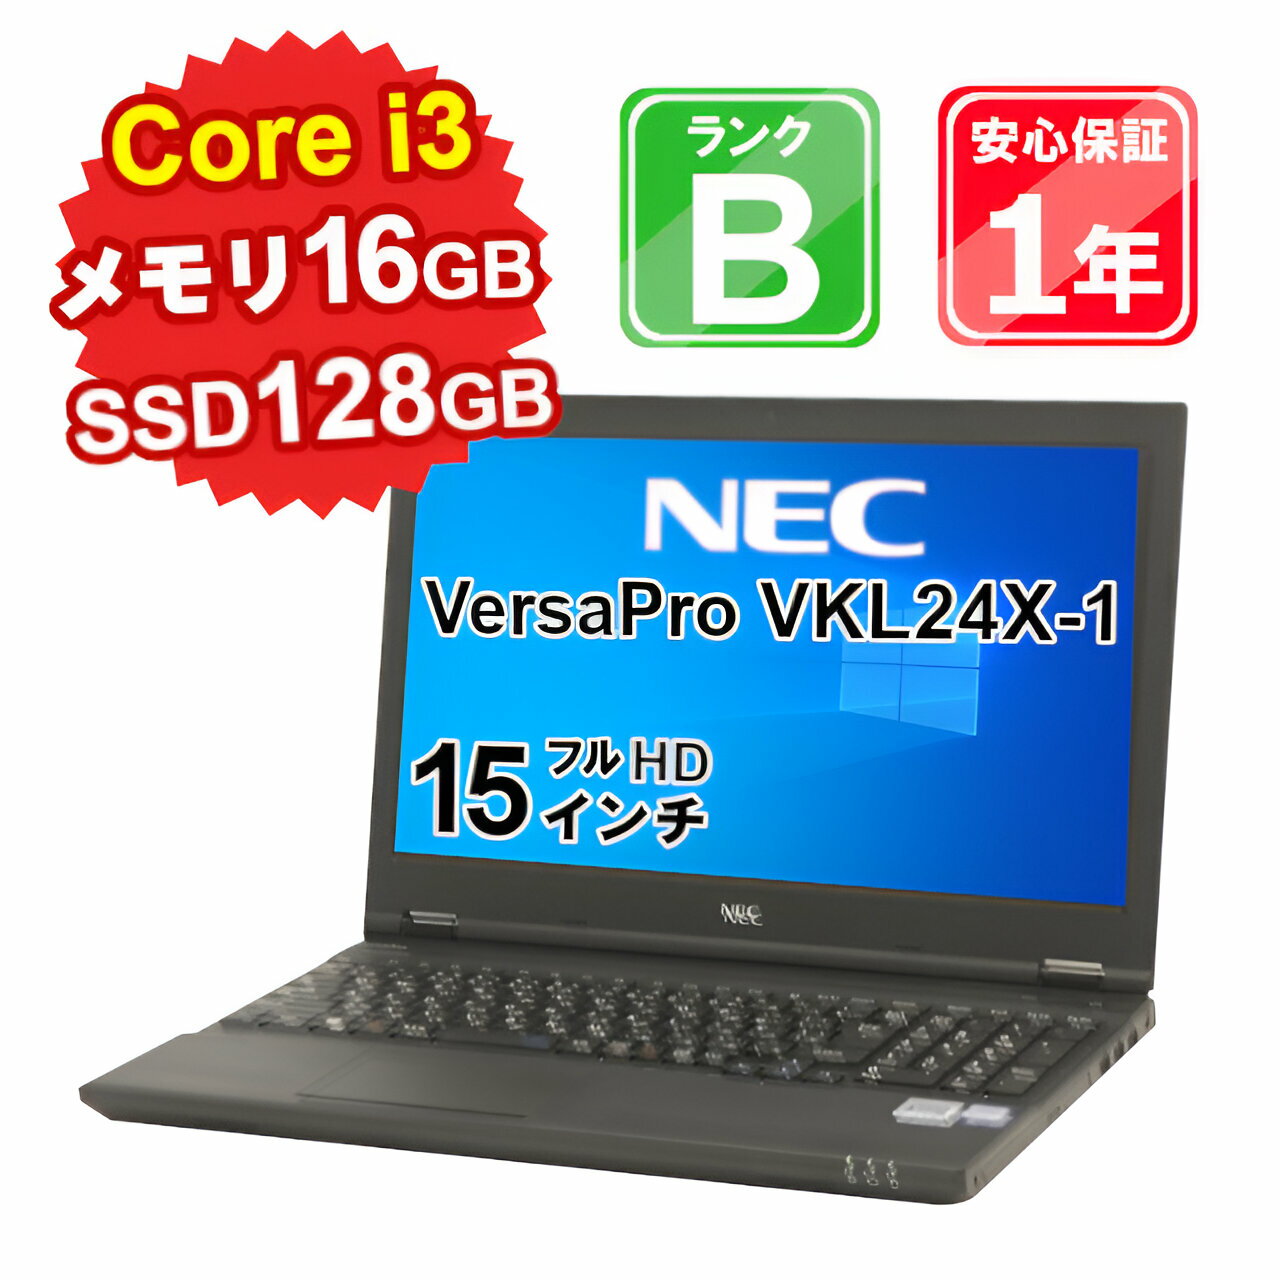 【5/18-5/20 限定12 OFFクーポン開催中】【中古】 中古 パソコン ノートパソコン NEC VersaPro VKL24X-1 PC-VKL24XZG1 Core i3-7100U 2.4GHz メモリ16GB SSD128GB Windows10Home DVD 15インチ フルHD 1年保証 【E】【ヤマダホールディングスグループ】